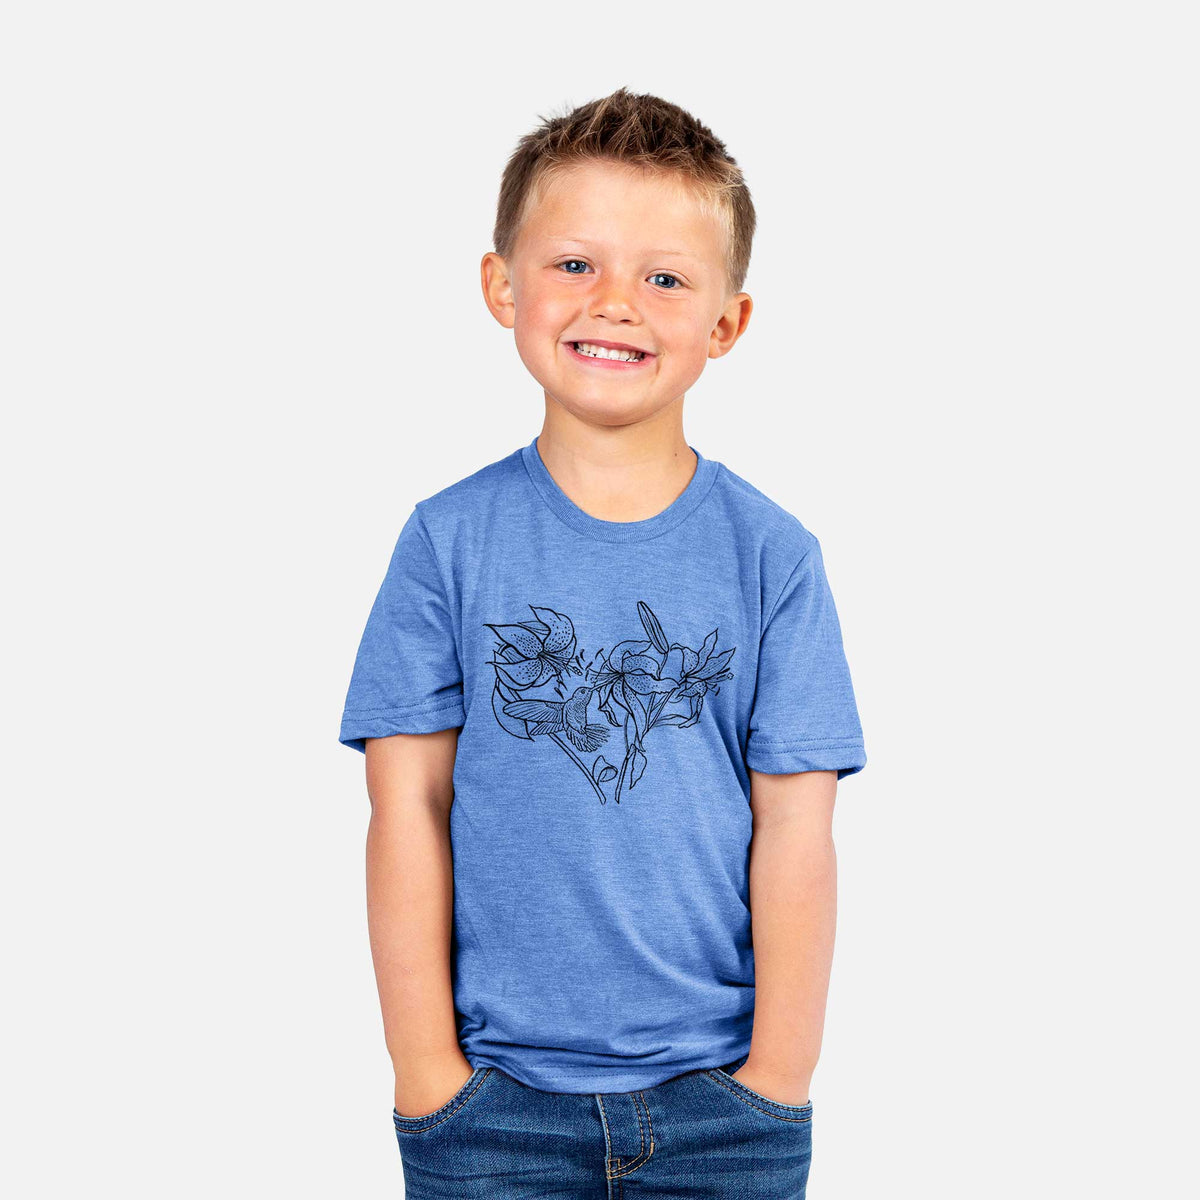 Hummingbird with Lillies Heart - Kids Shirt